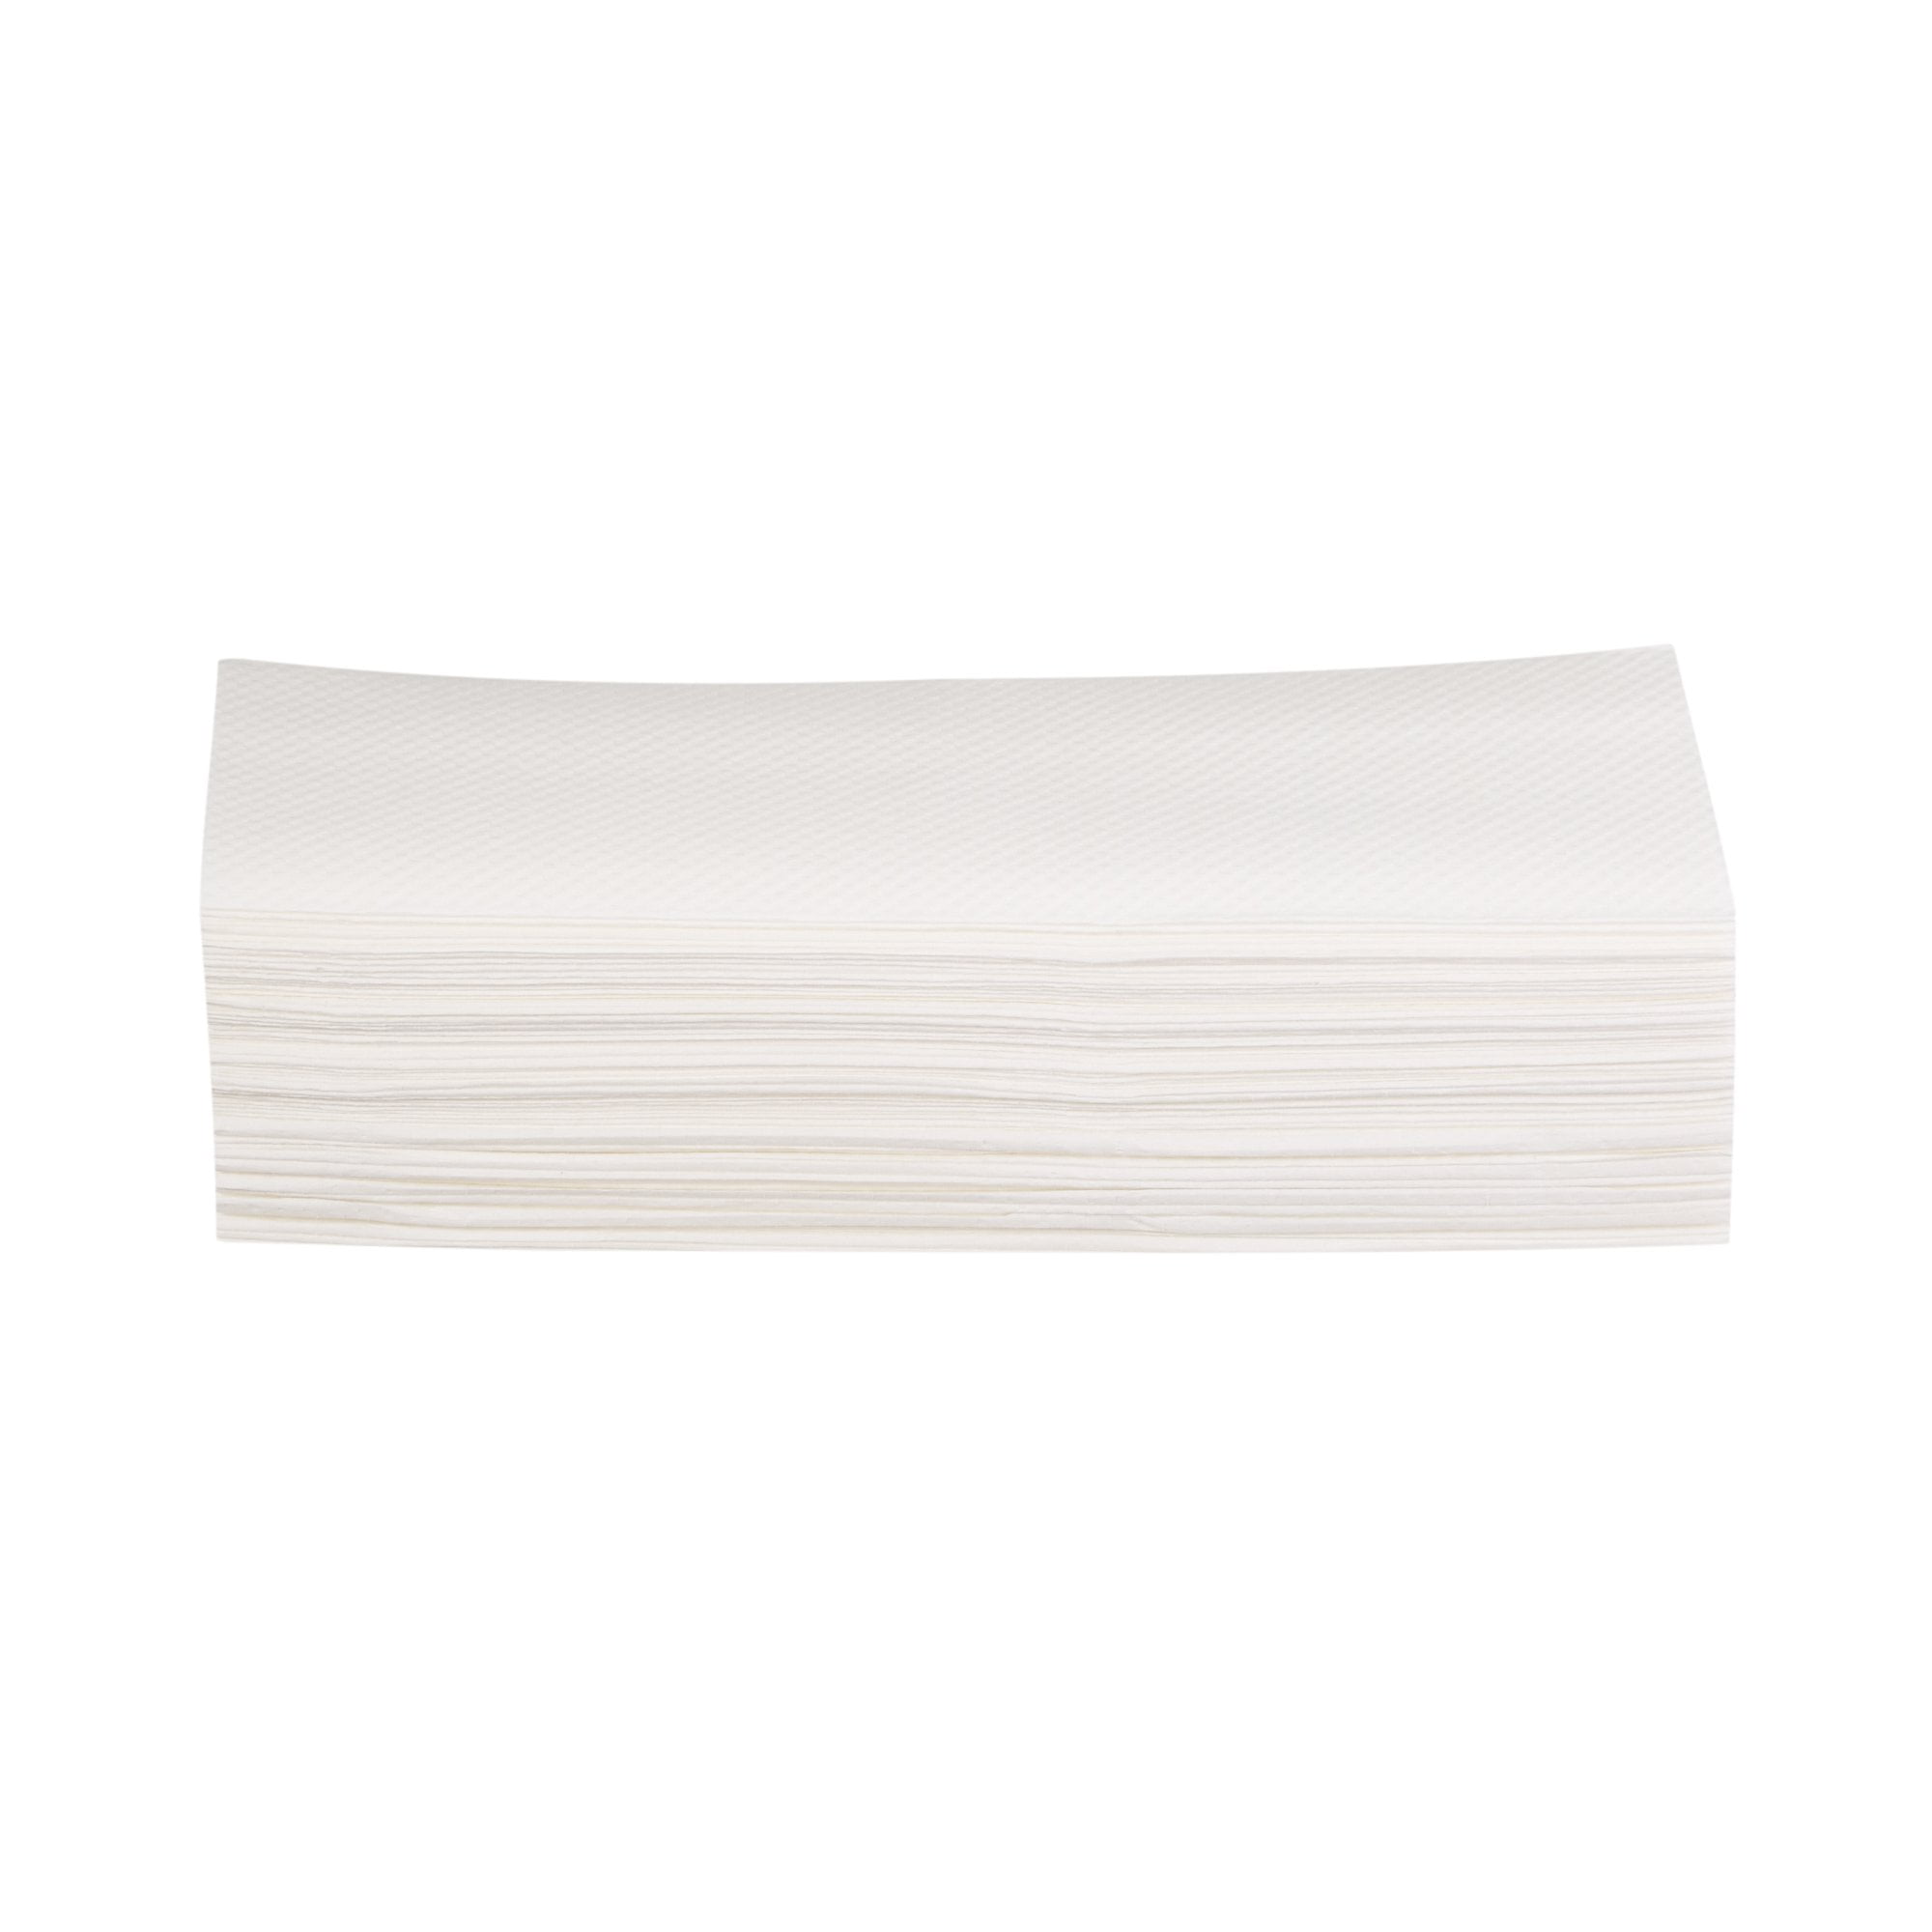 McKesson Multi-Fold Premium Paper Towels PK/250 9.06" x 9.45" #165-MF250P 